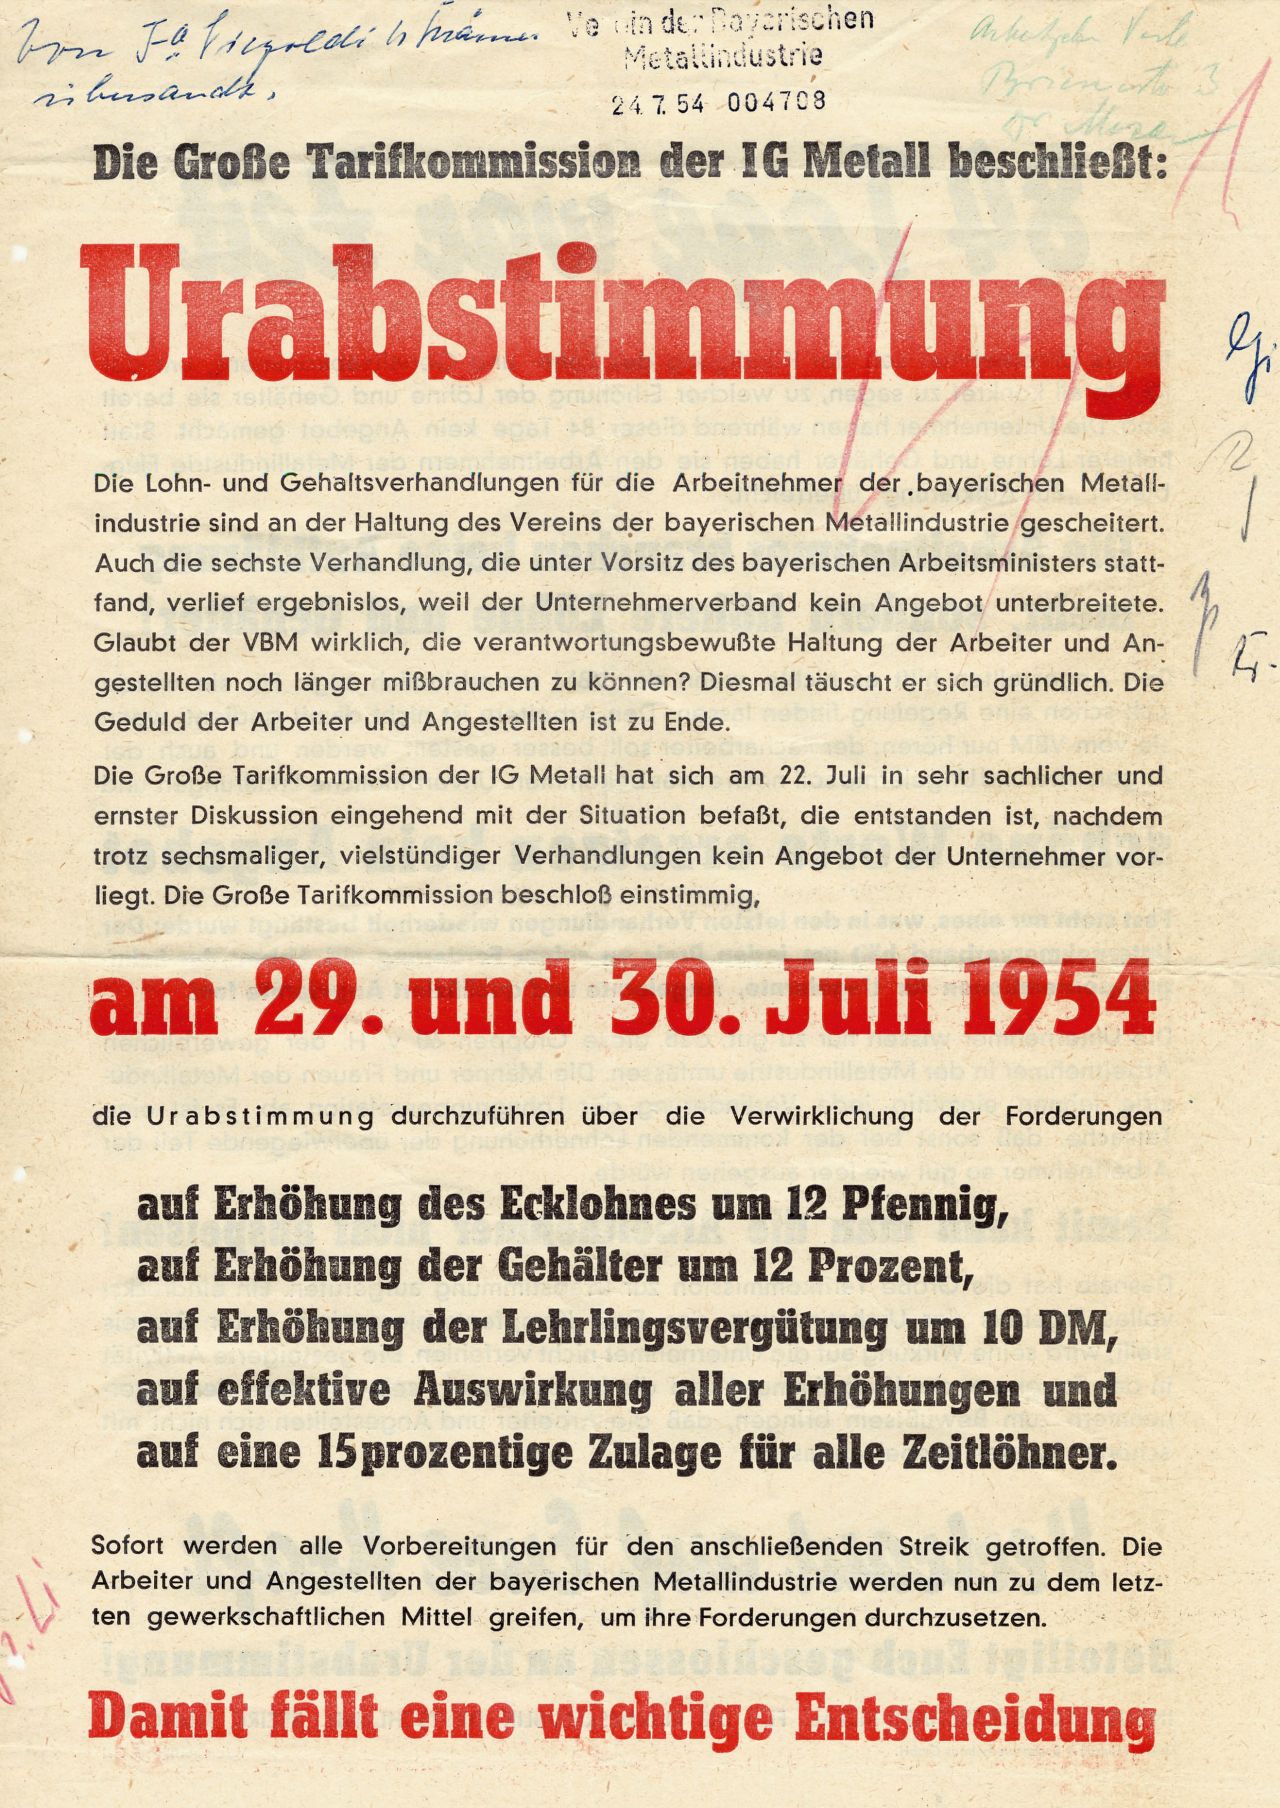 Flugblatt zur Urabstimmung am 29. und 30. Juli 1954